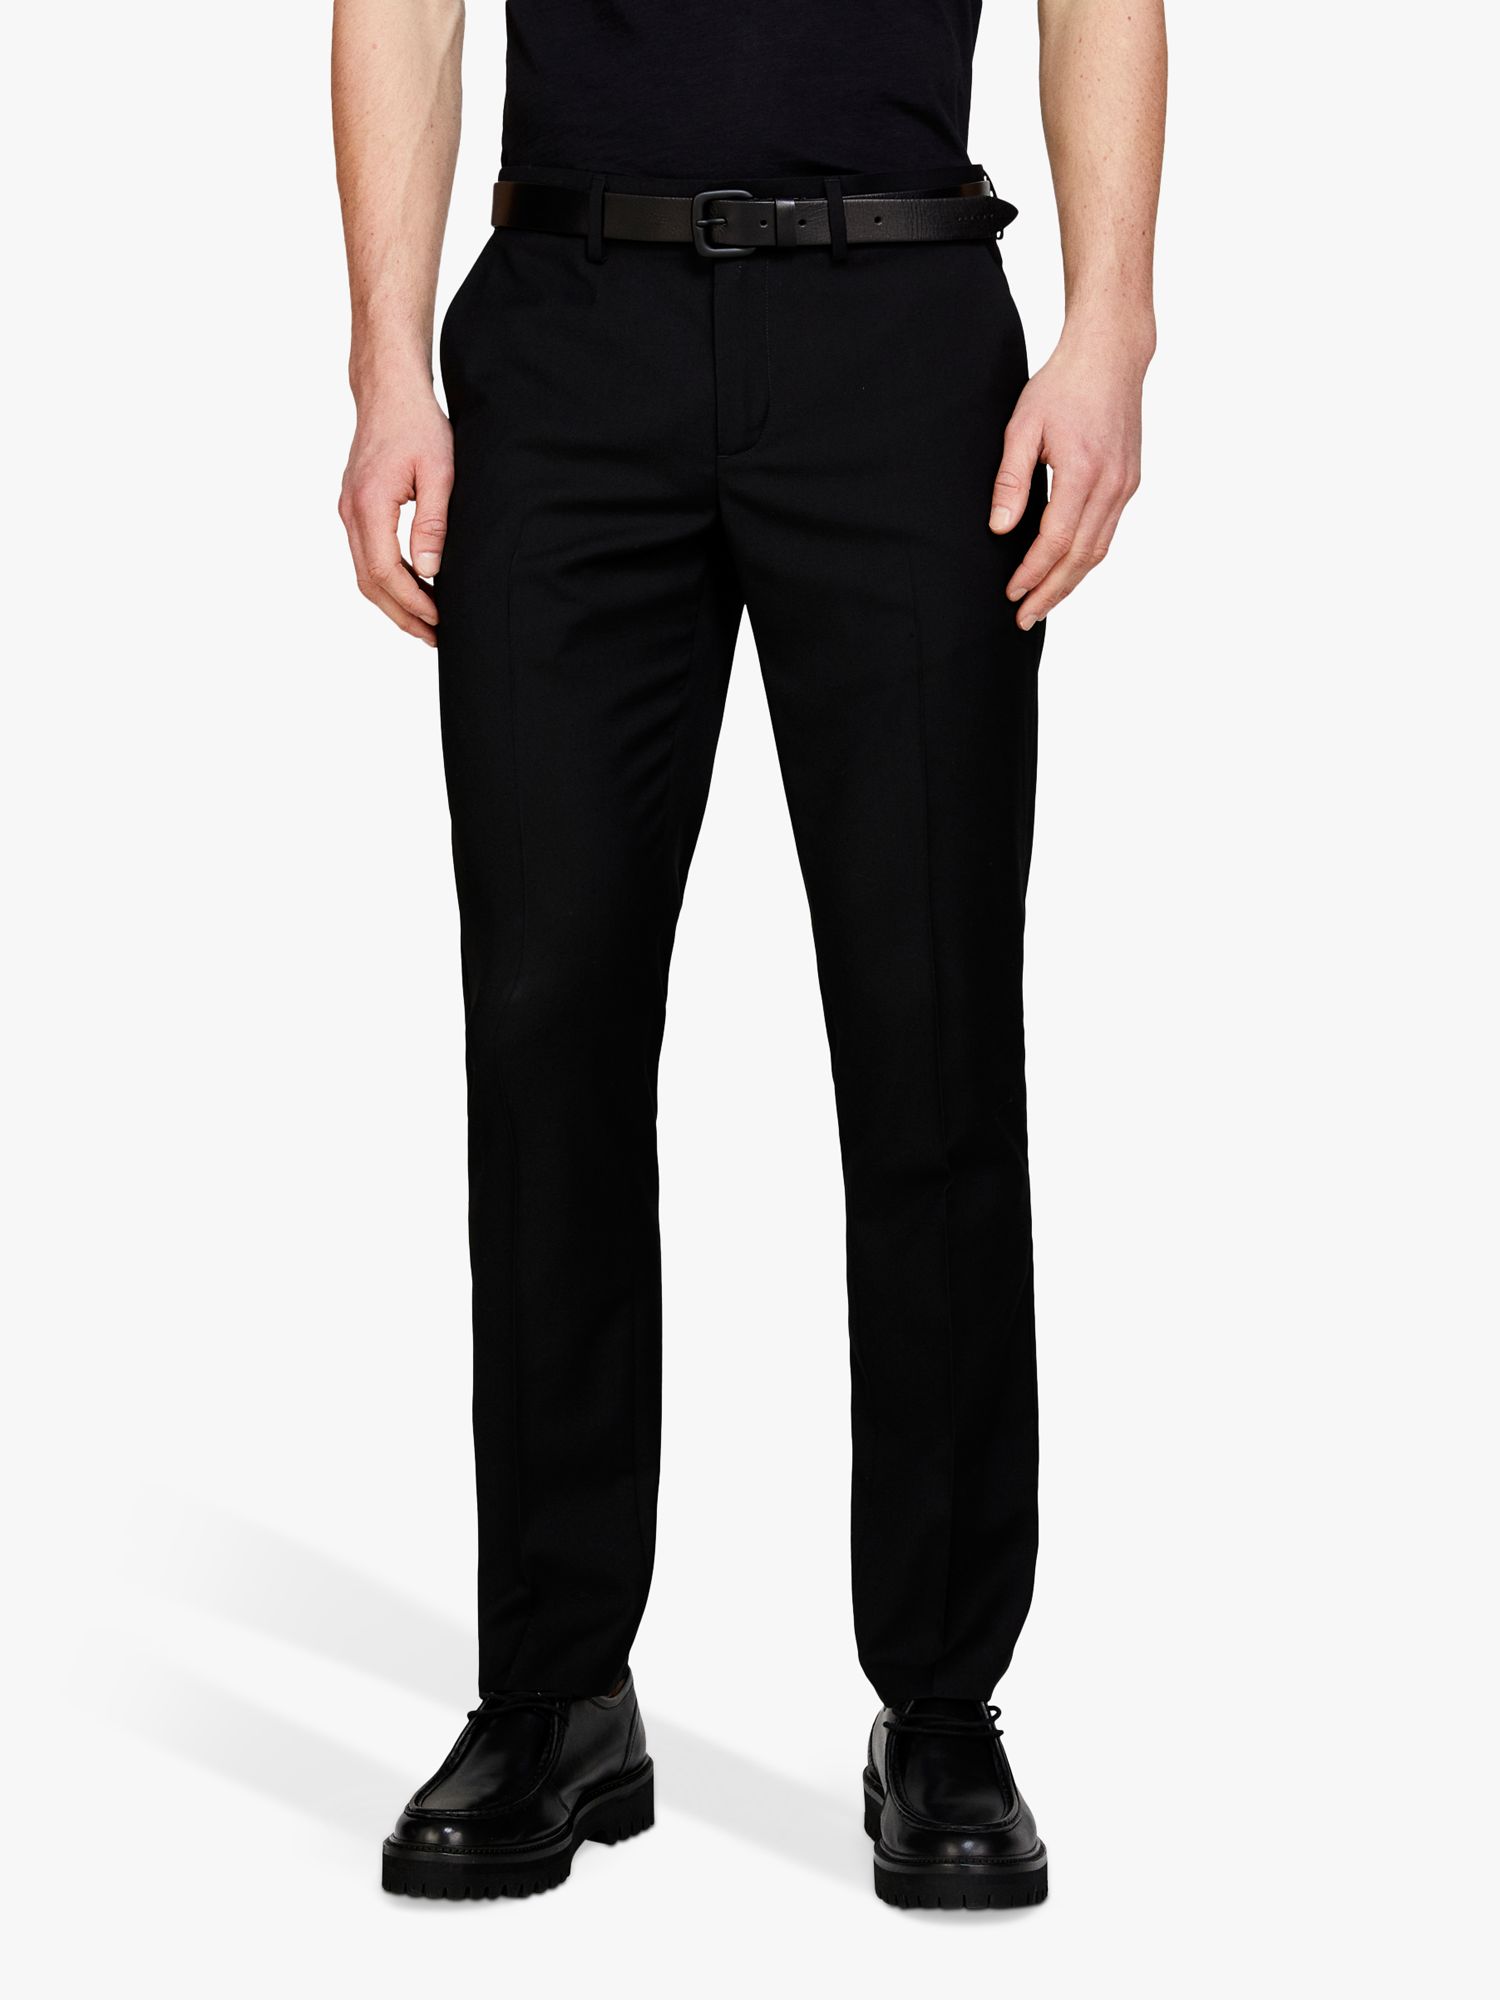 Buy SISLEY Formal Slim Fit Trousers, Black Online at johnlewis.com